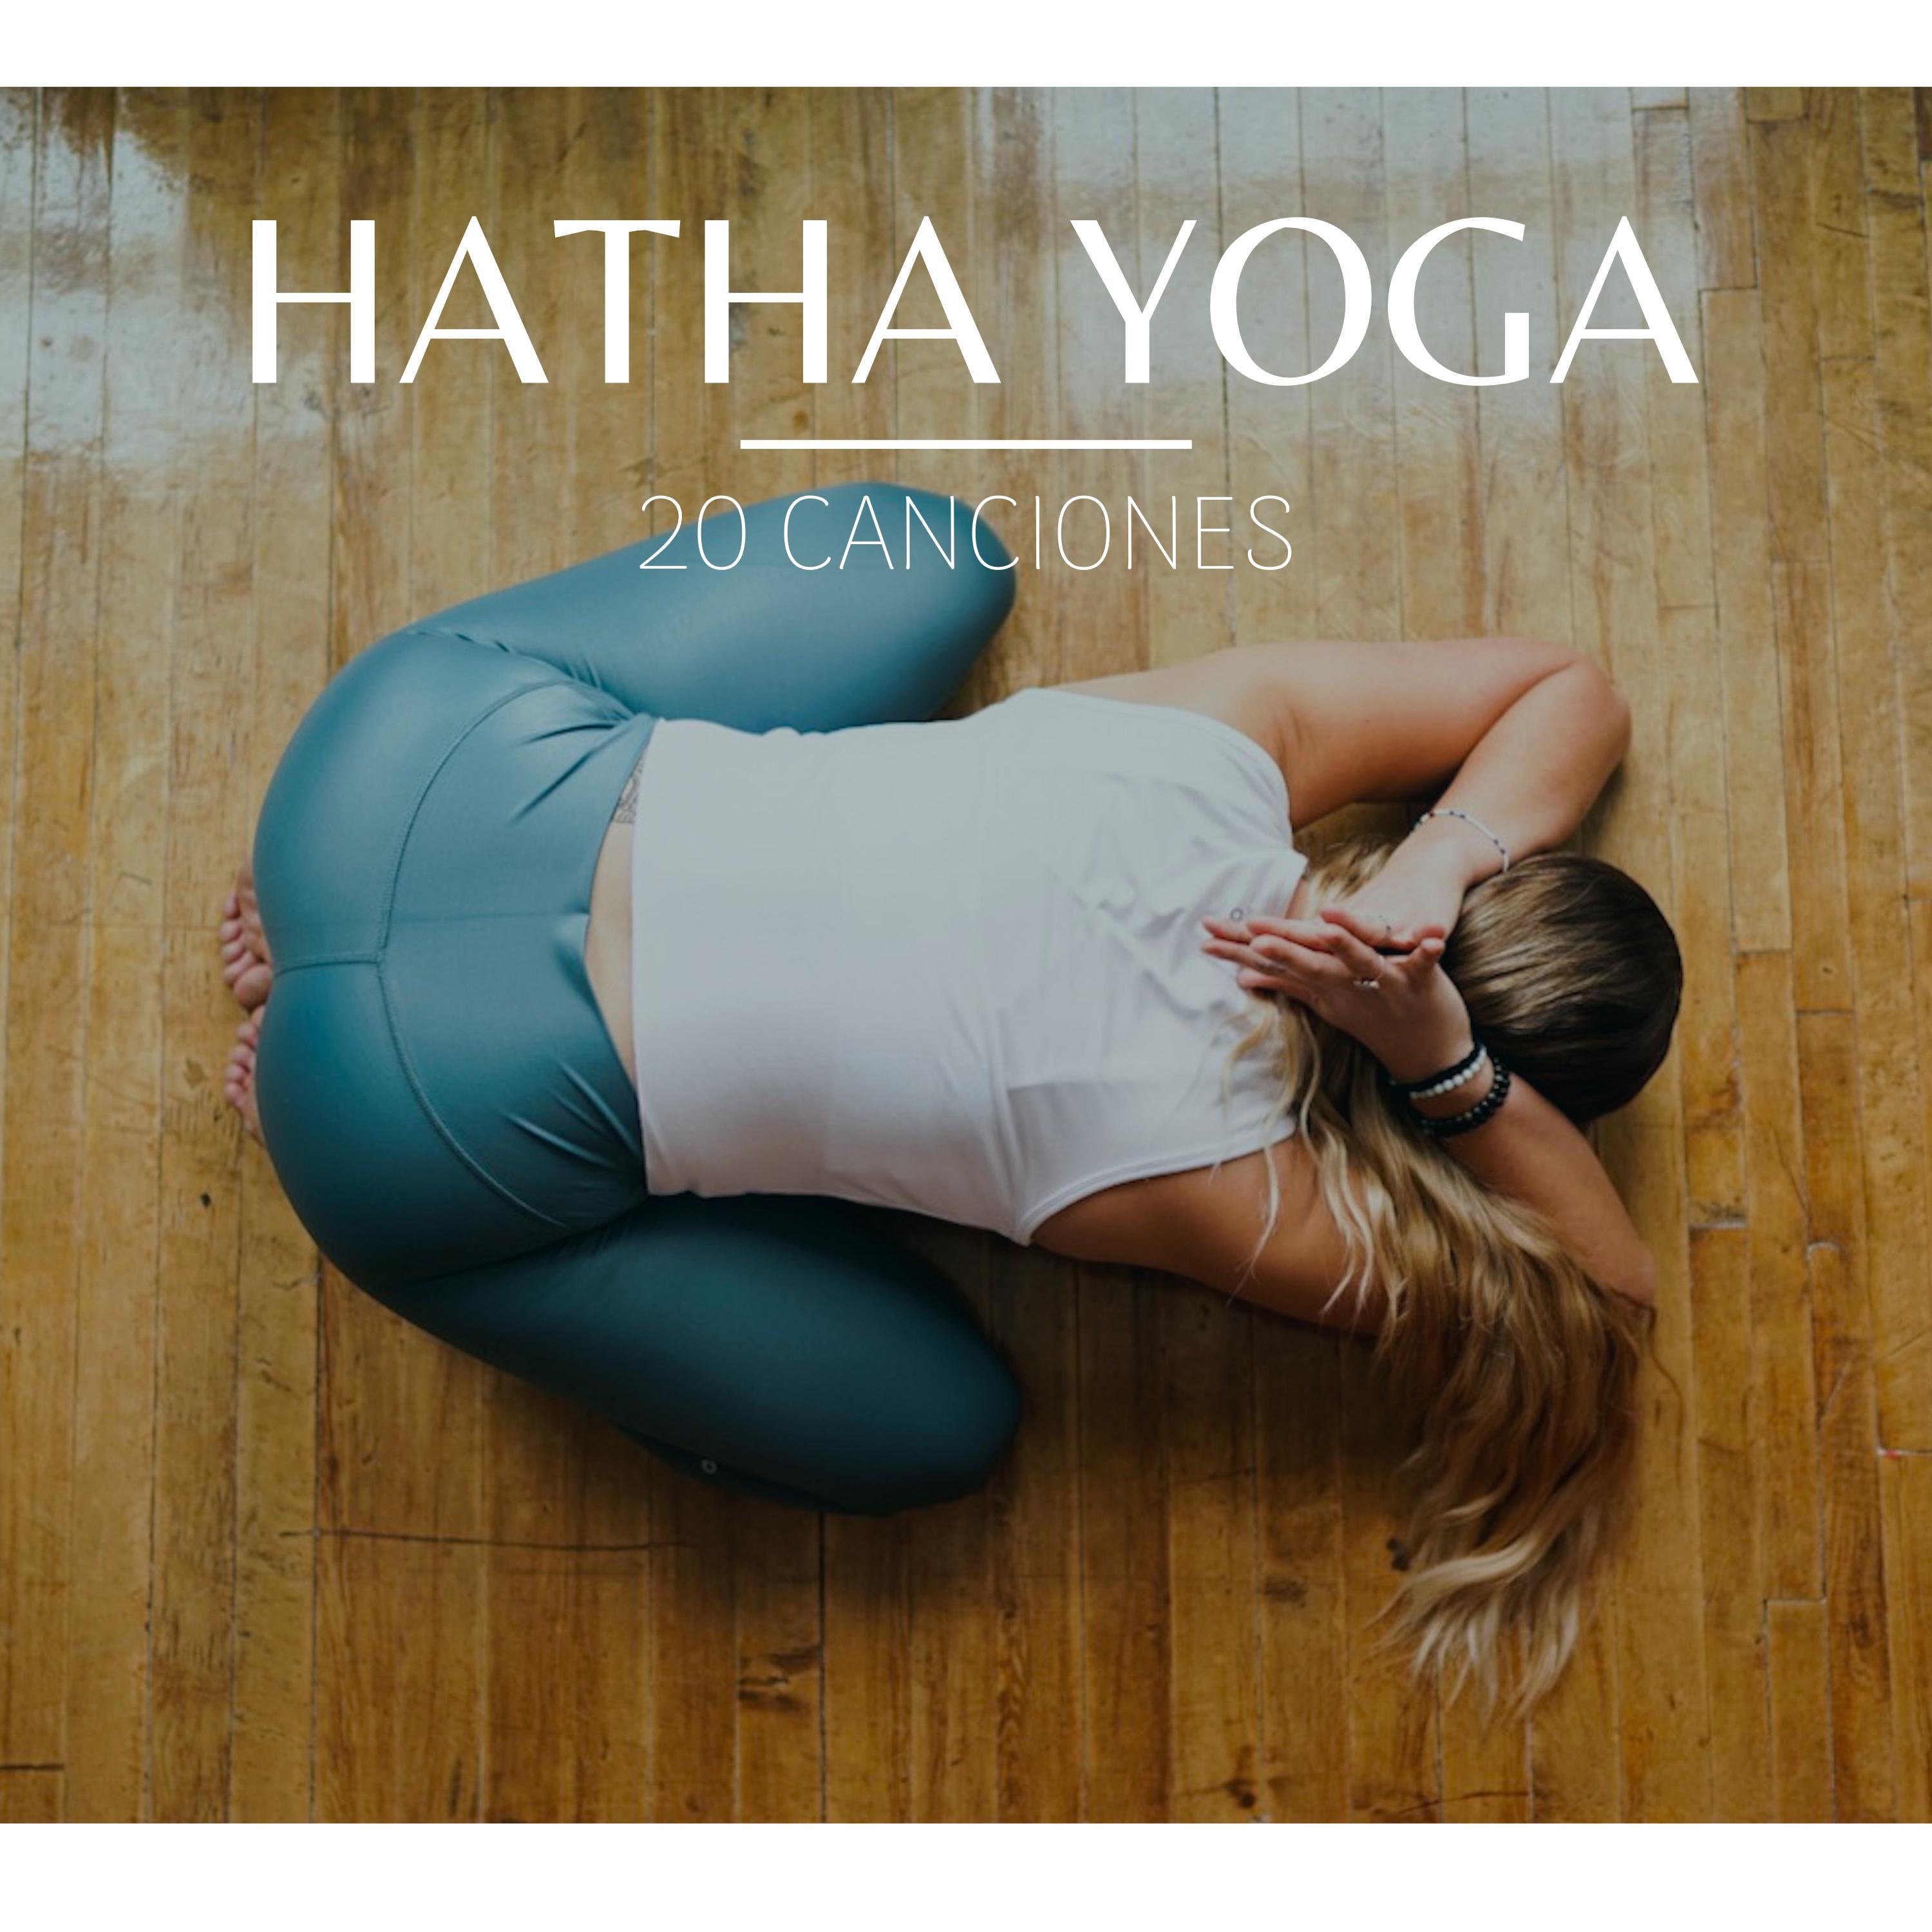 Hatha Yoga: 20 Canciones - Posiciones y Ejercicios Yoga, Relajación con Sonidos de la Naturaleza